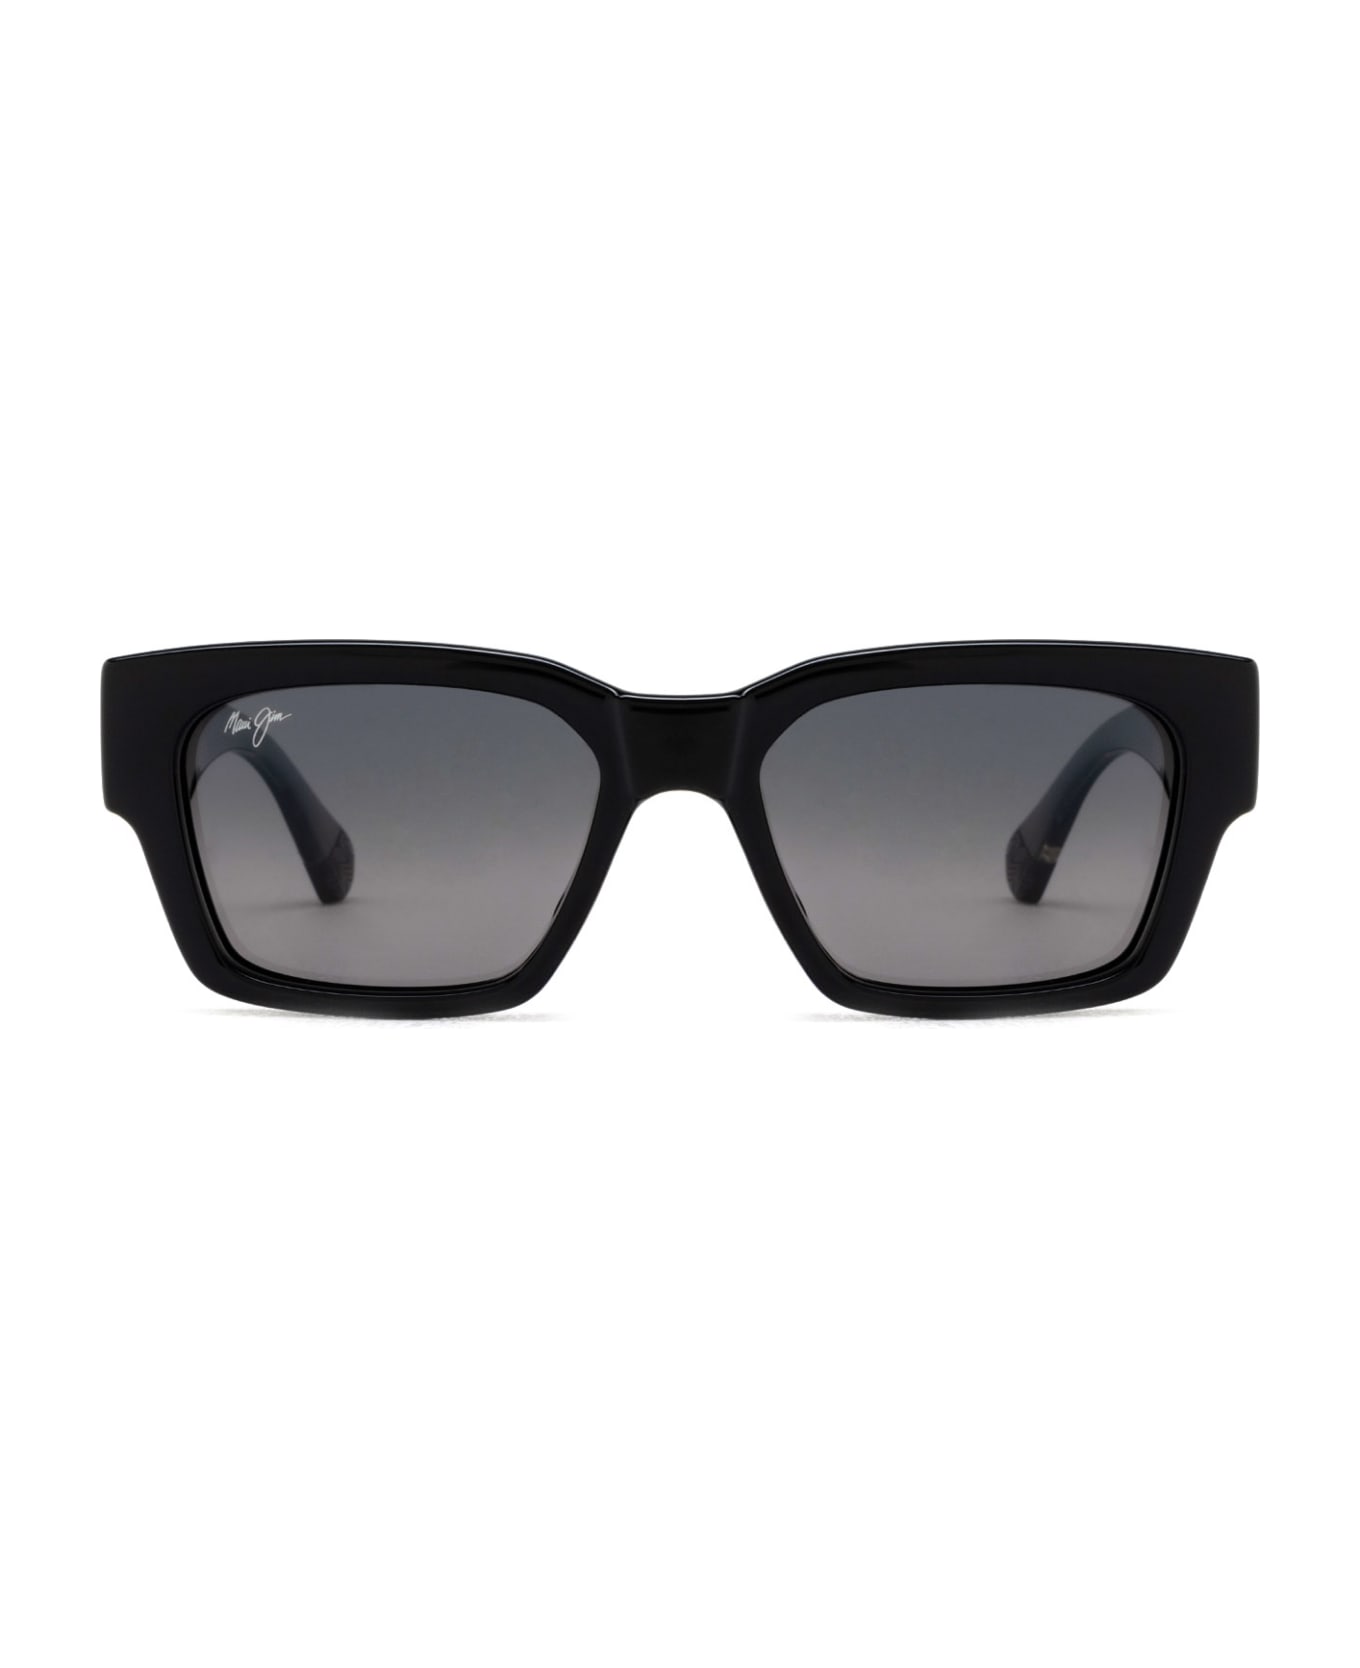 Maui Jim Mj642 Shiny Black W/trans Light Grey Sunglasses - Shiny Black W/Trans Light Grey